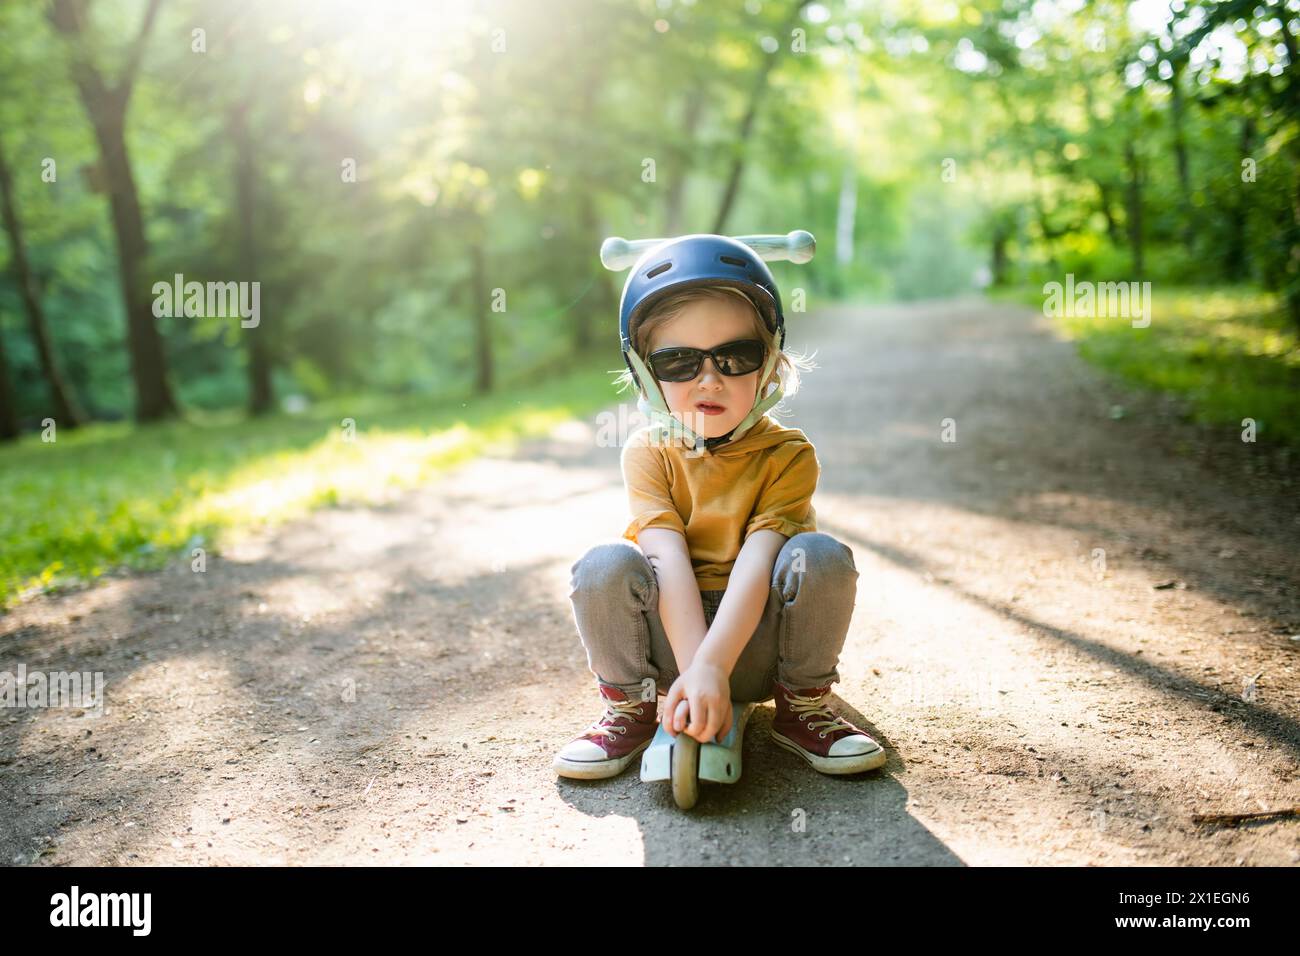 Entzückender kleiner Junge, der seinen Roller in einem Stadtpark am sonnigen Sommerabend fährt. Kleines Kind, das mit Helm auf einer Rollrolle fährt. Aktive Freizeit und Outdoo Stockfoto